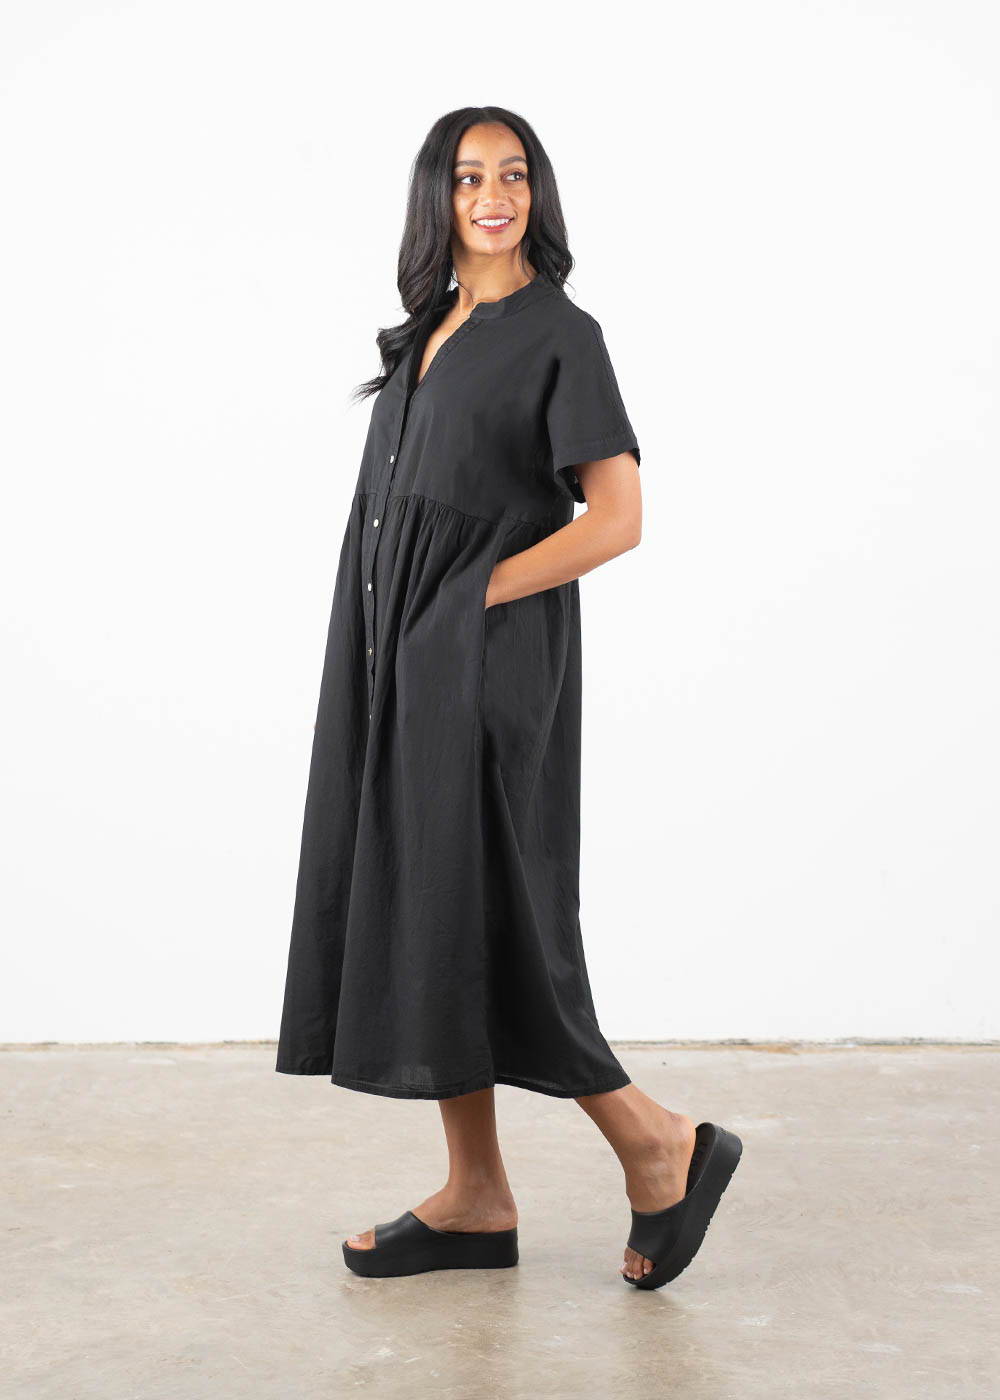 A model wearing a loose, oversized midi dress in a deep jet black